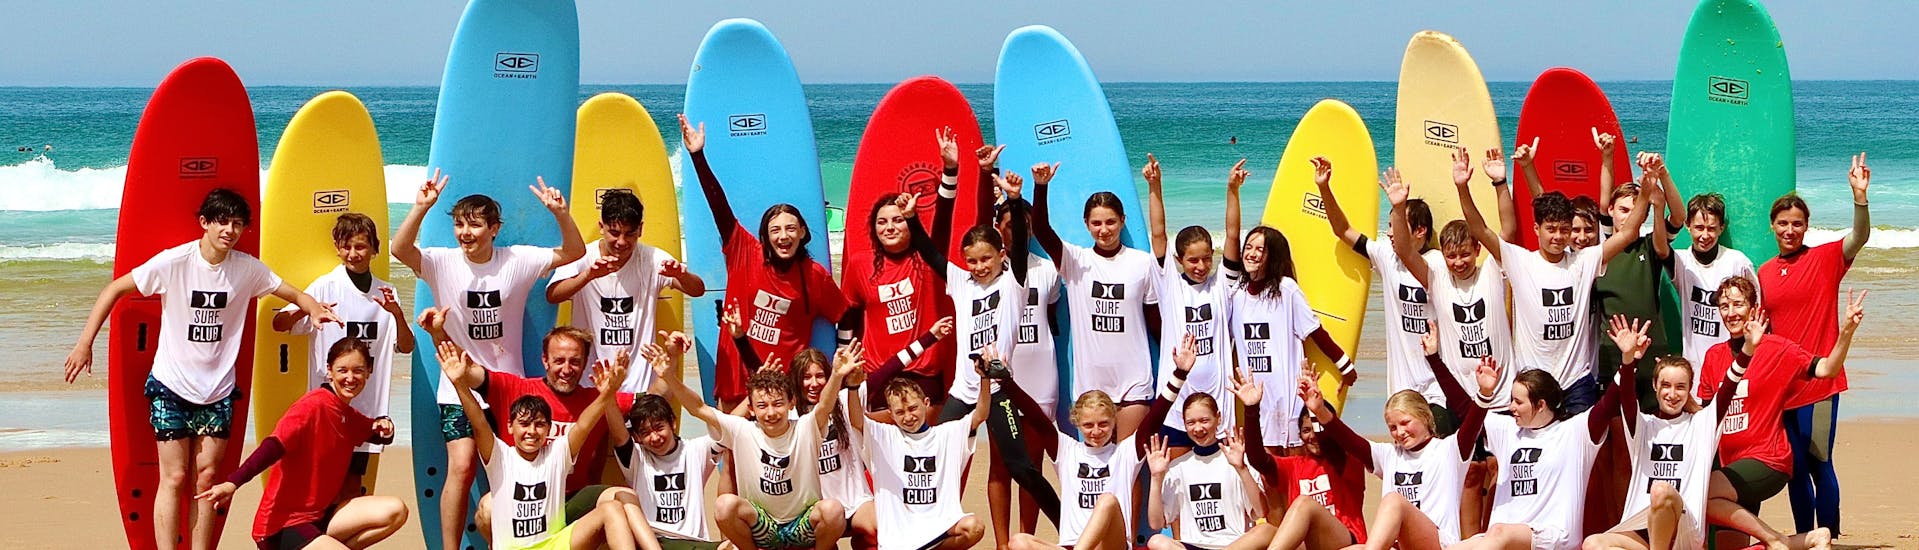 Lezioni di surf a Lacanau da 11 anni per tutti i livelli.